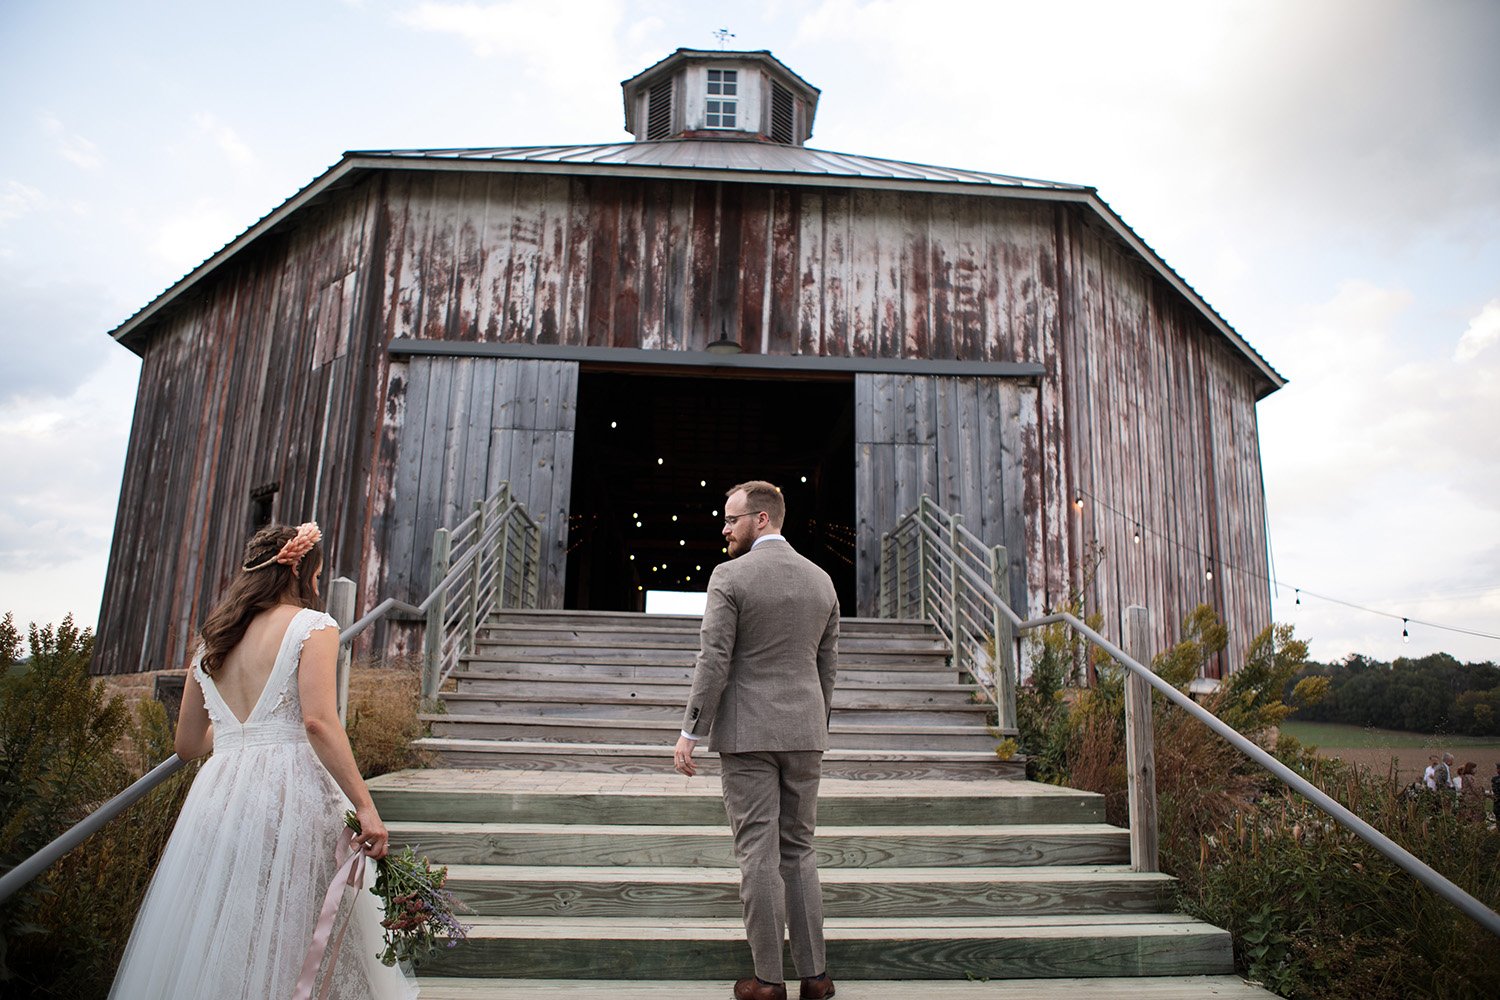 Octagon barn wedding photos023.jpg